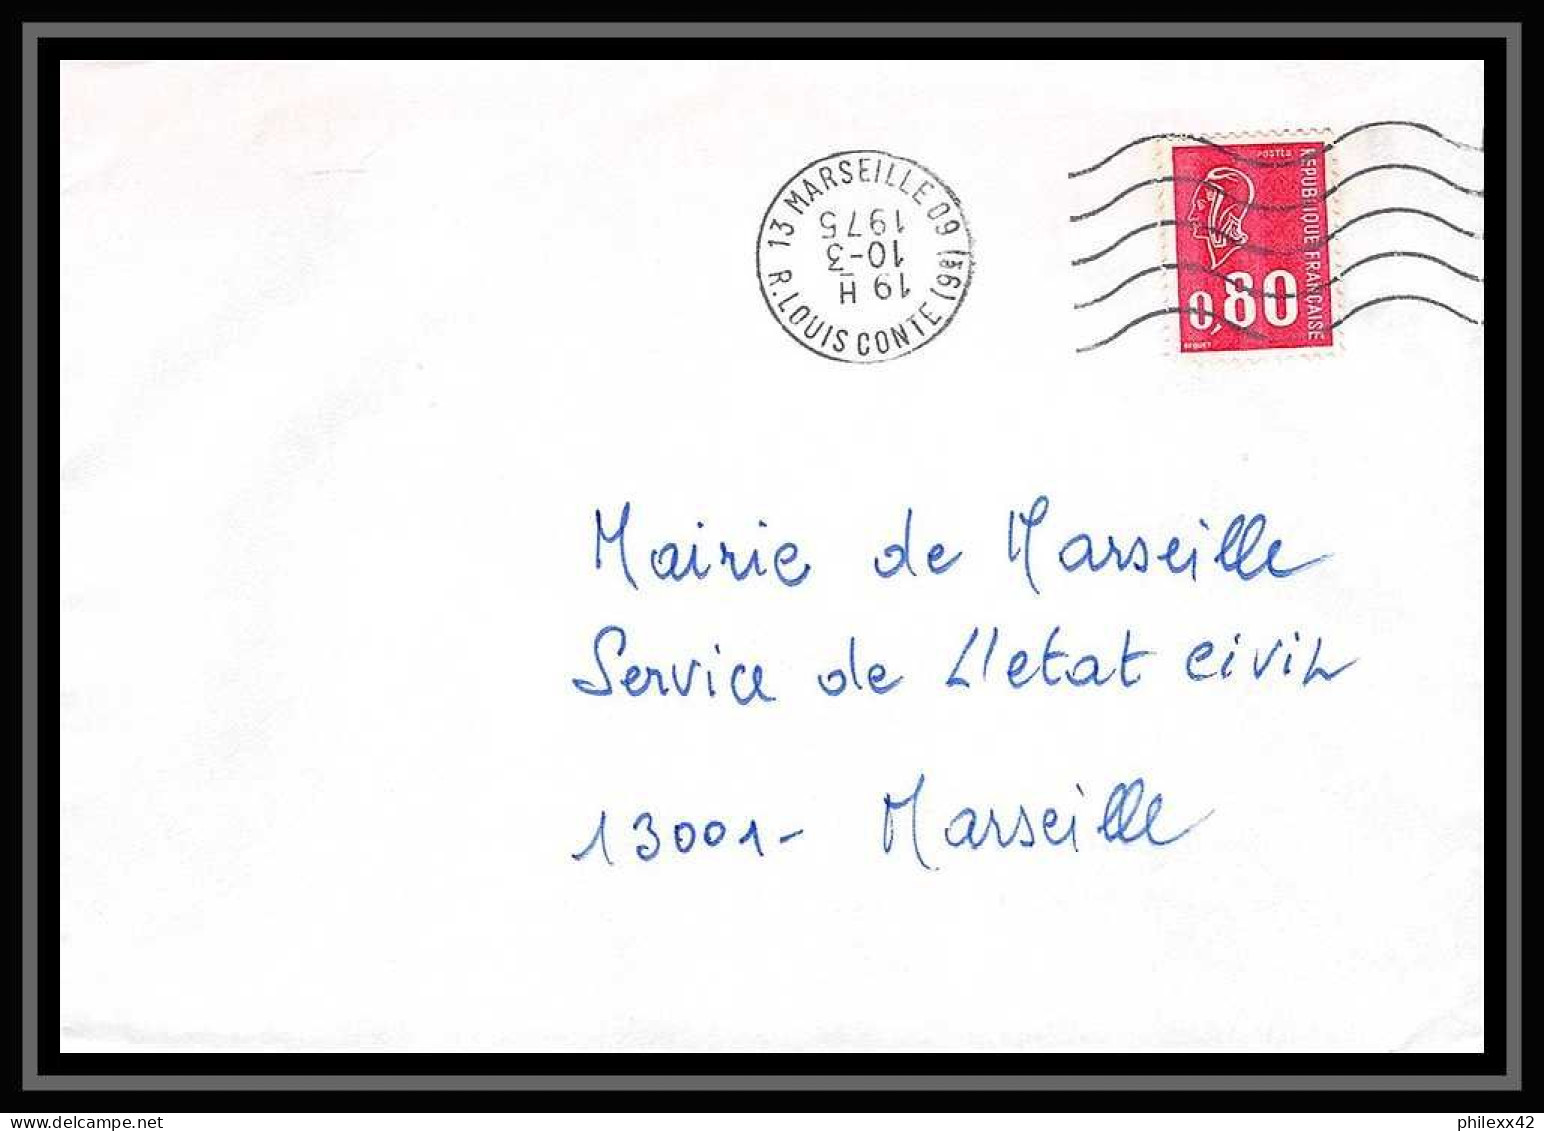 110050 lot de 13 Lettres Bouches du rhone Marseille Louis conte 